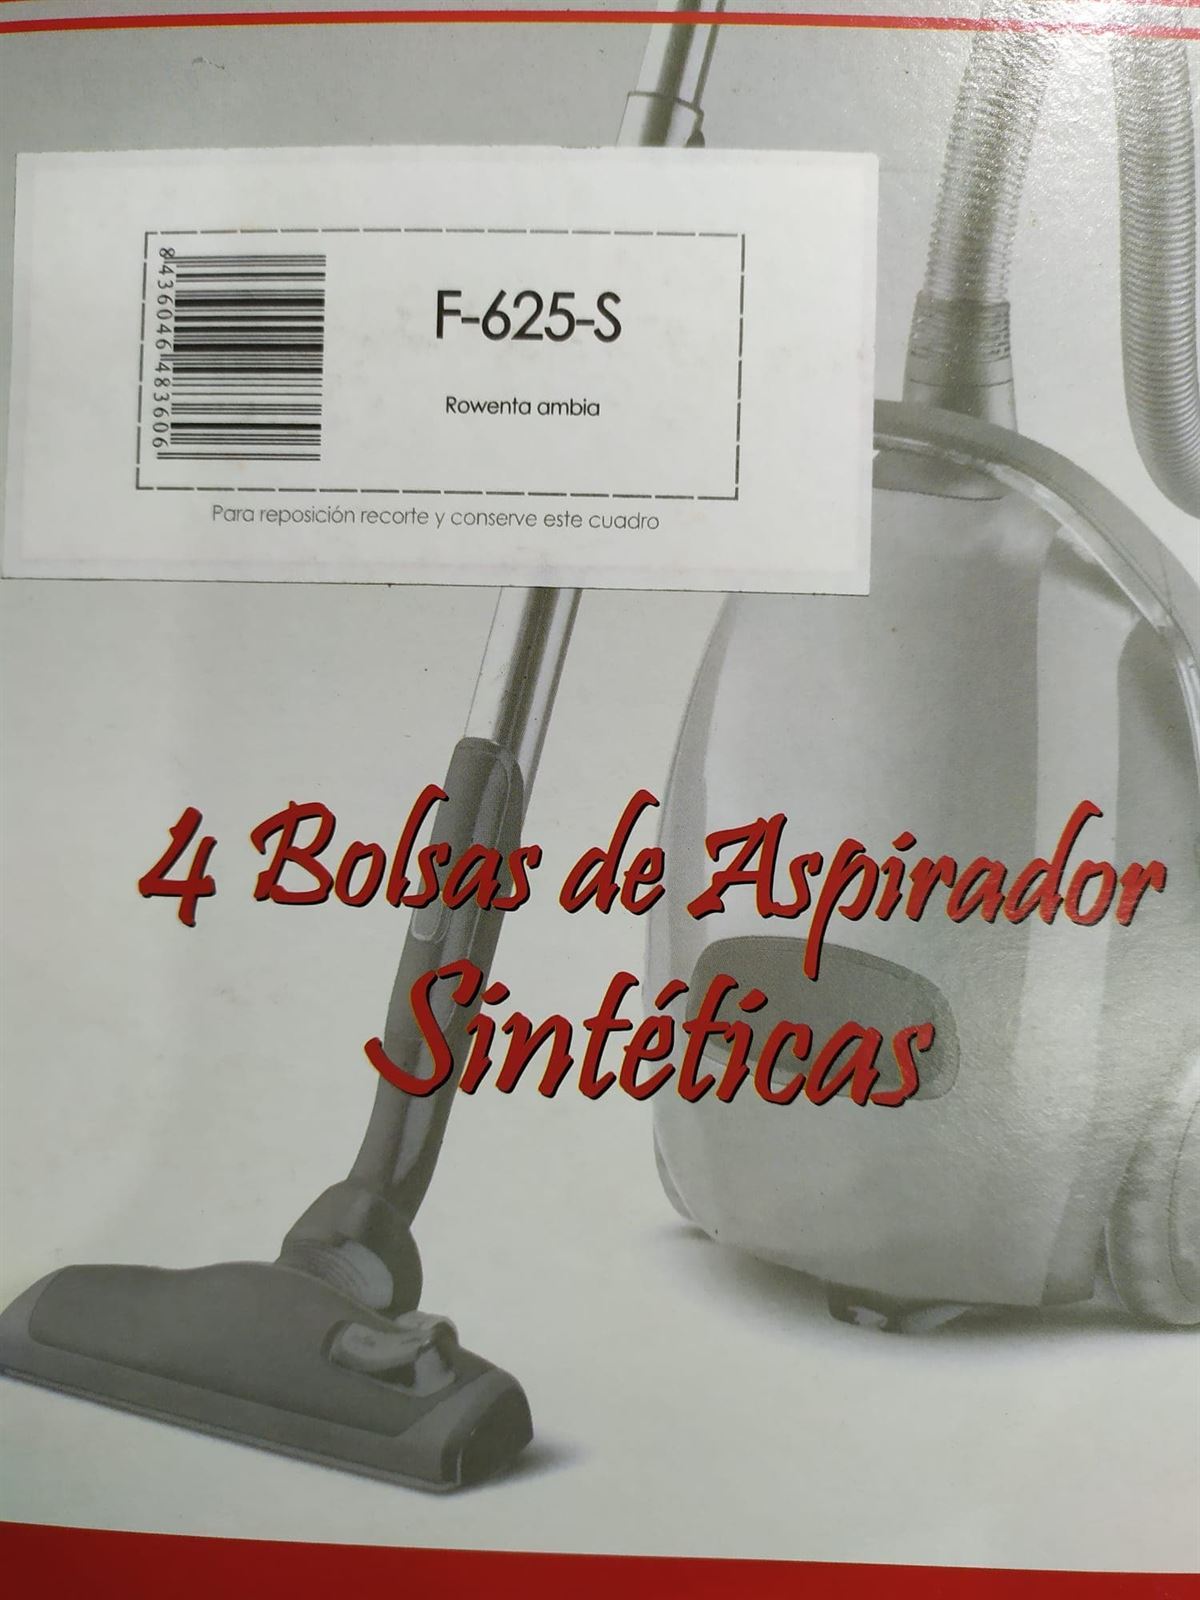 BOLSA ASPIRADOR ROWENTA AMBIA, CAJA 4 BOLSAS SINTETICAS, F-625-S - Imagen 2